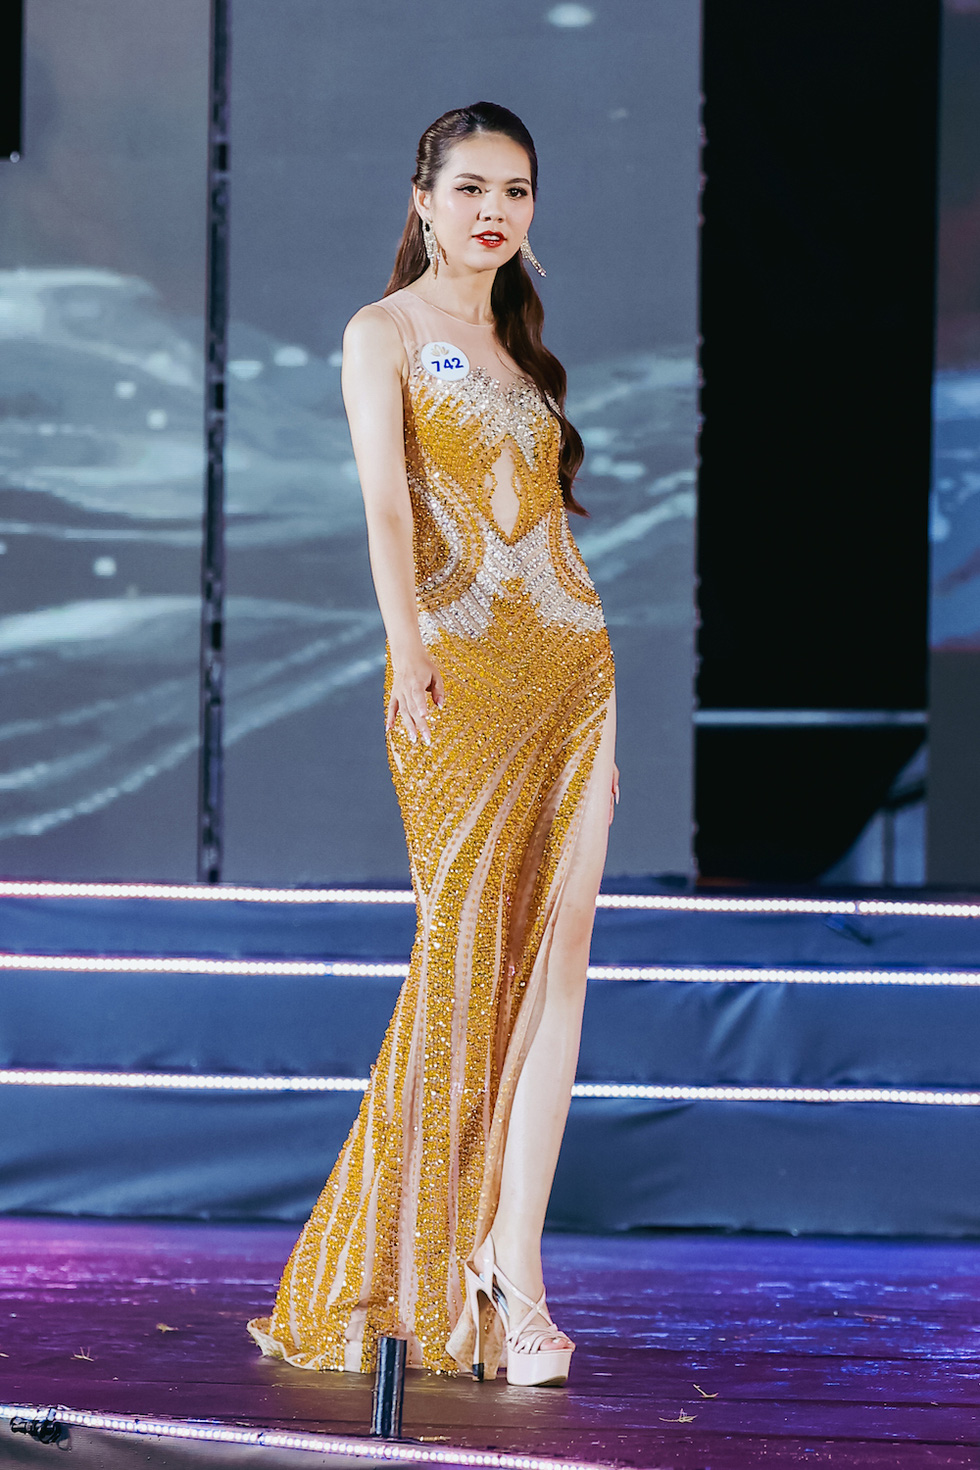 Hoa hậu Du lịch Ngọc Diễm thôi nhiệm kỳ dài 14 năm, trao vương miện cho tân hoa hậu - Ảnh 2.